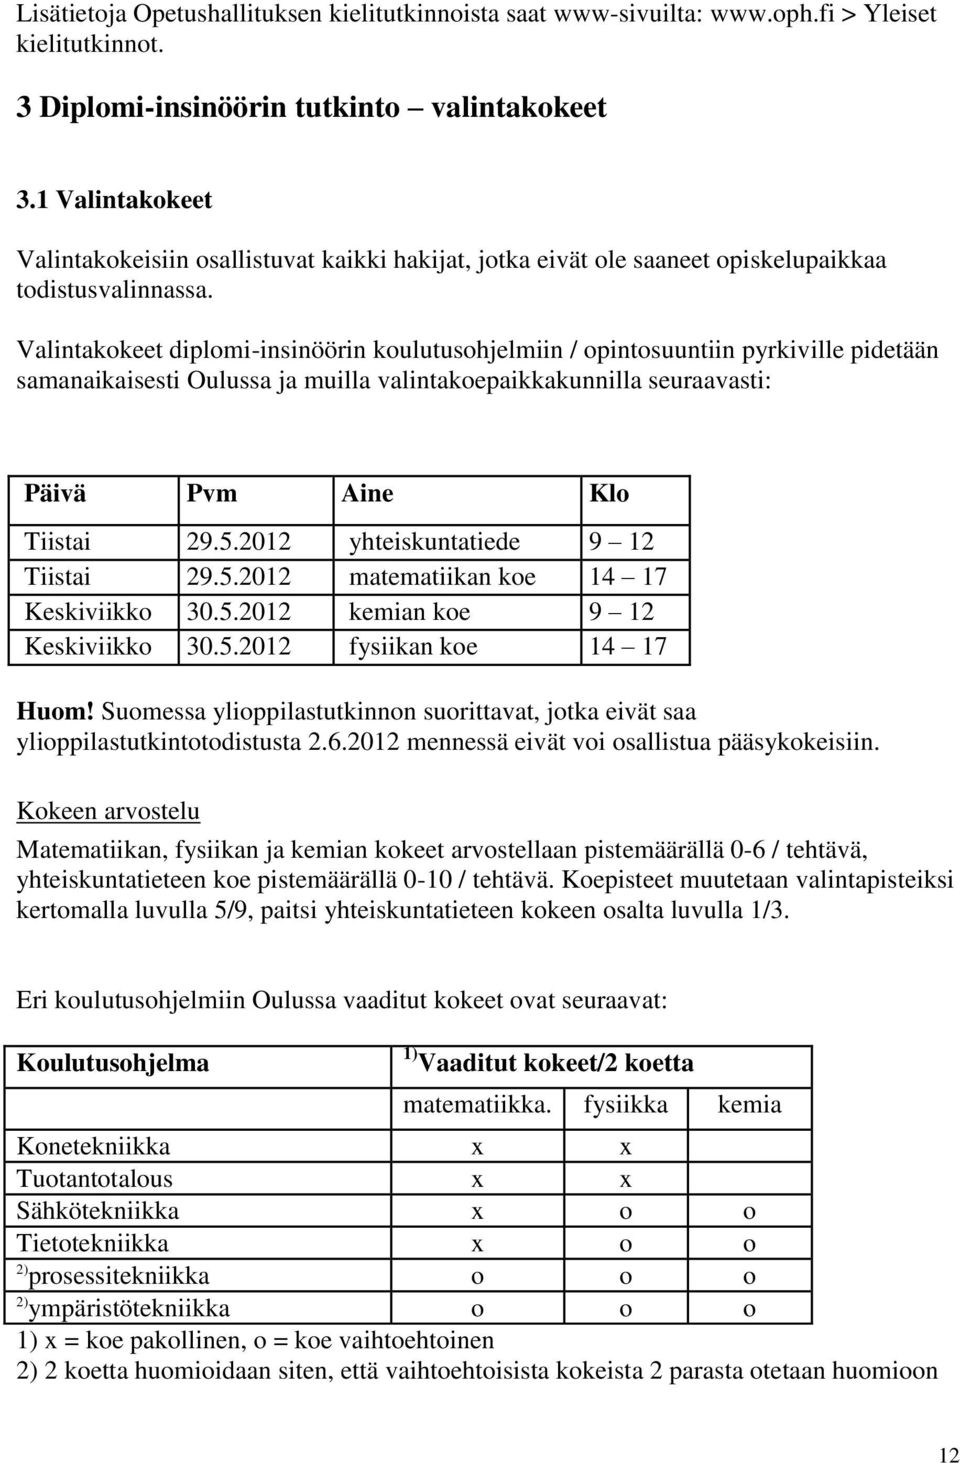 Valintakokeet diplomi-insinöörin koulutusohjelmiin / opintosuuntiin pyrkiville pidetään samanaikaisesti Oulussa ja muilla valintakoepaikkakunnilla seuraavasti: Päivä Pvm Aine Klo Tiistai 29.5.